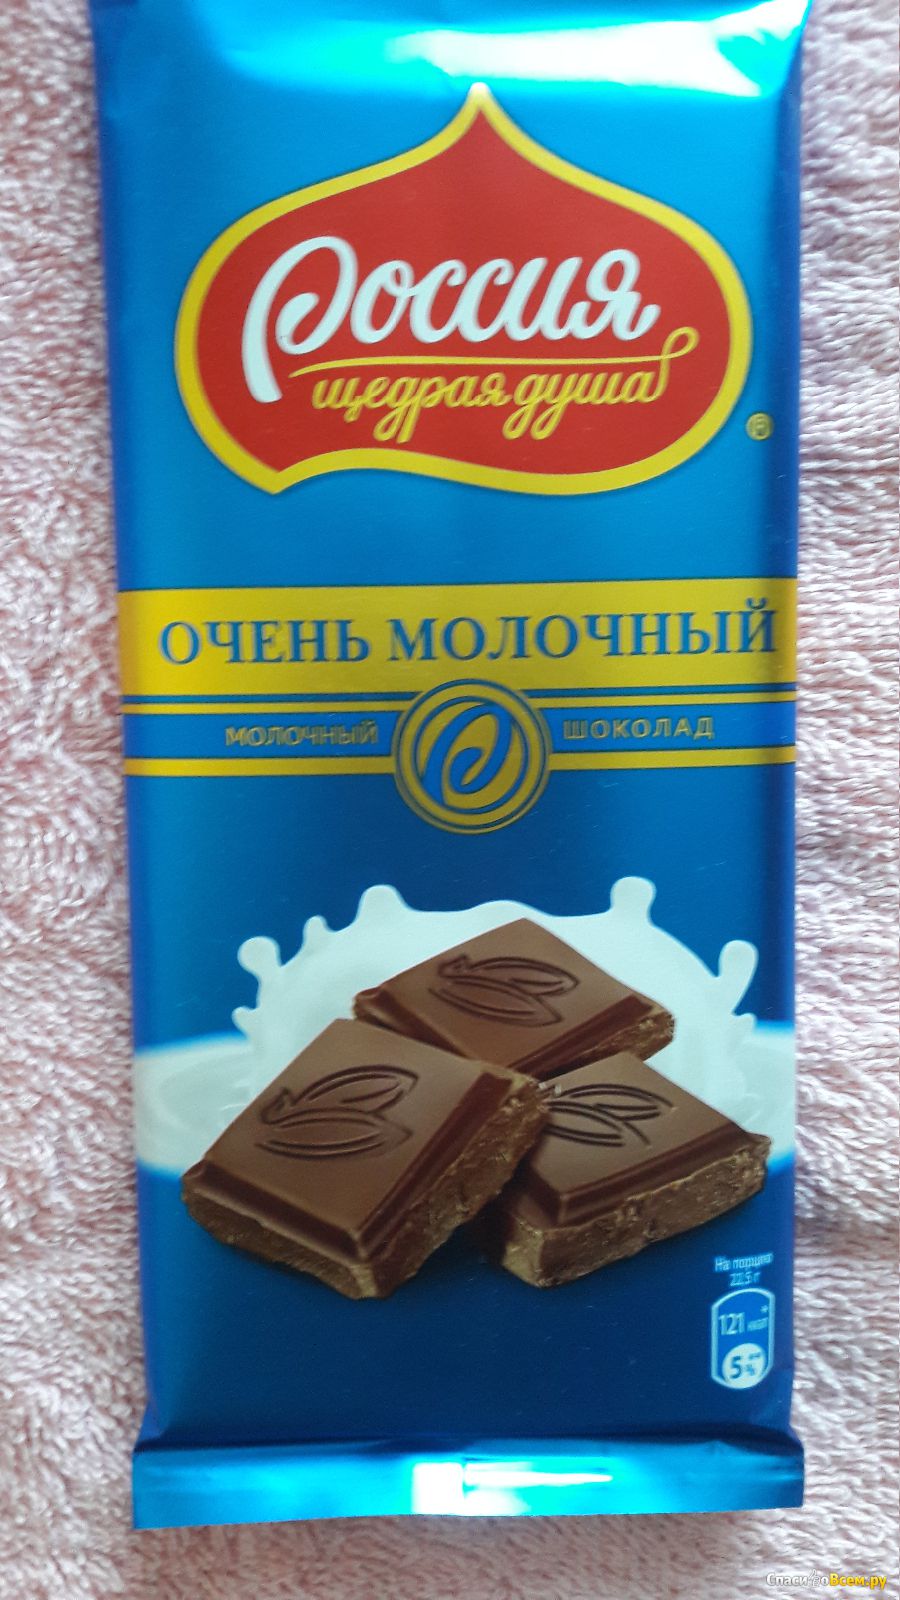 Очень шоколад. Шоколад Россия 90гр очень молочный/ Россия. Россия щедрая душа молочный шоколад. Шоколад Россия очень молочный 82г. Шоколад очень Половный.